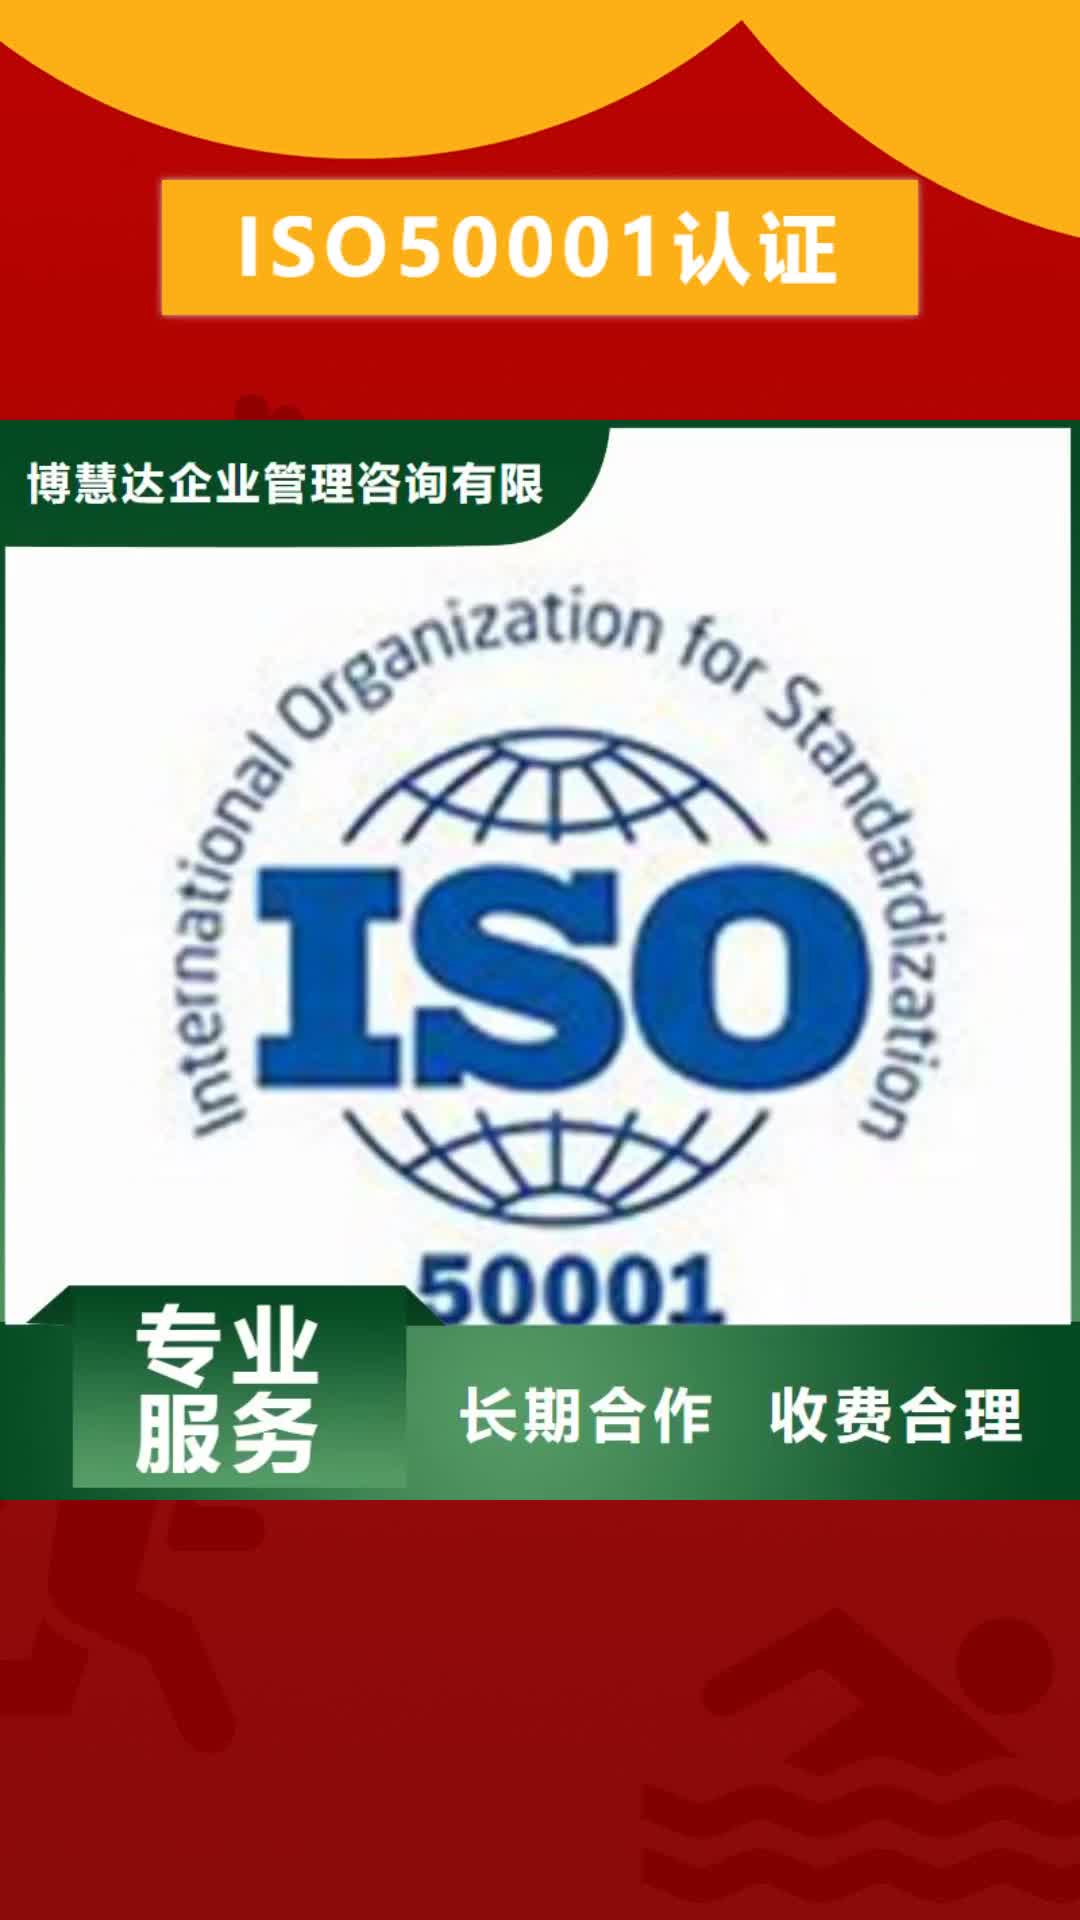 南京【ISO50001认证】 FSC认证技术成熟